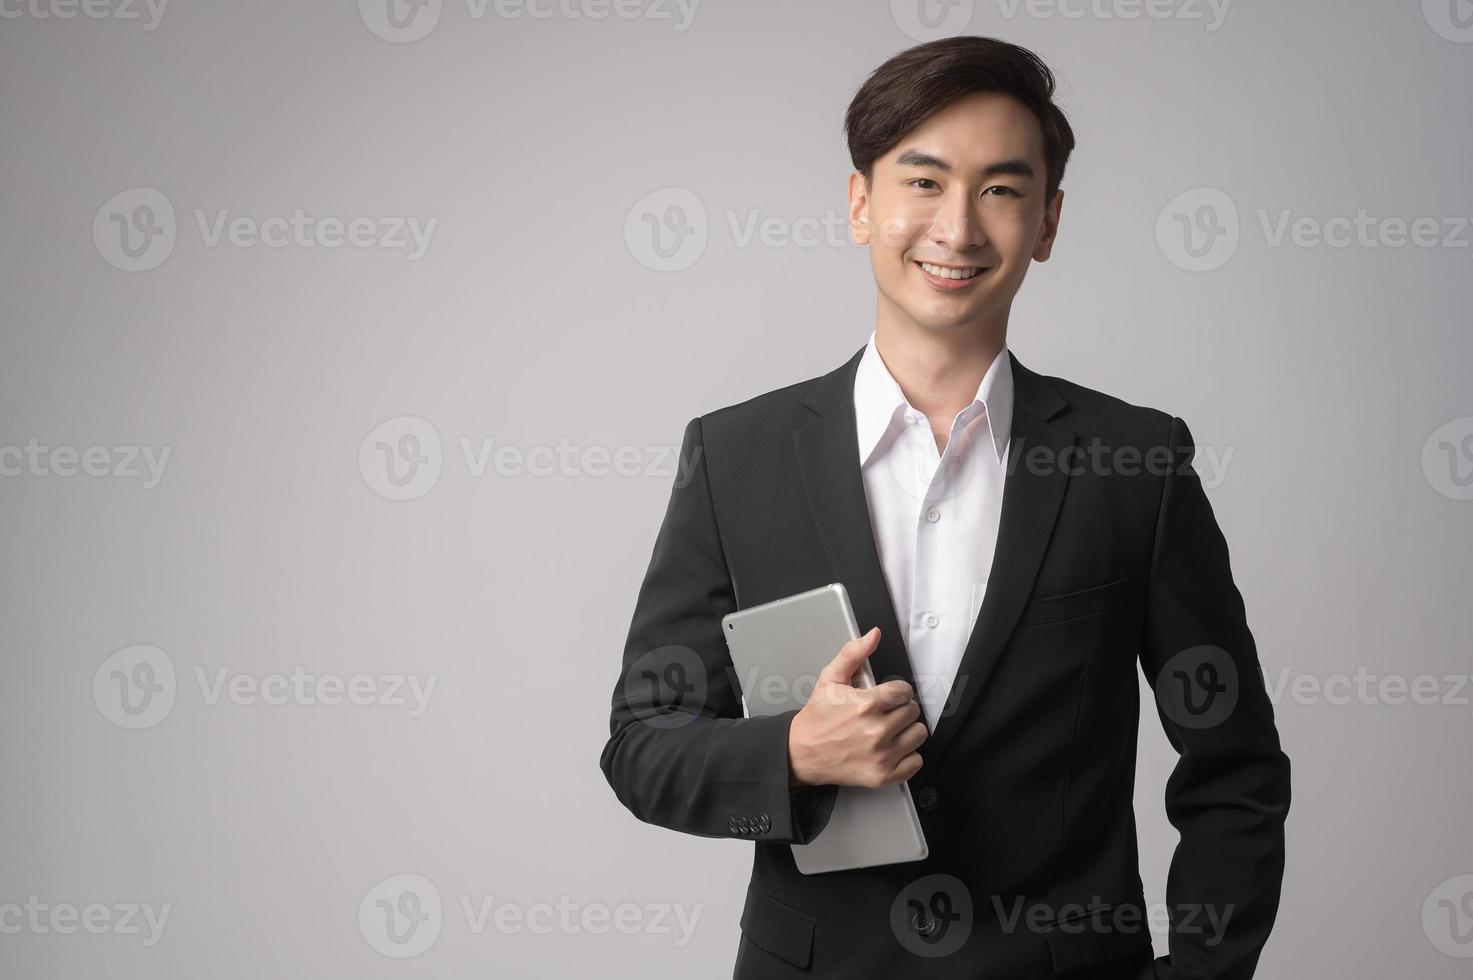 giovane uomo d'affari che indossa tuta su sfondo bianco studio foto